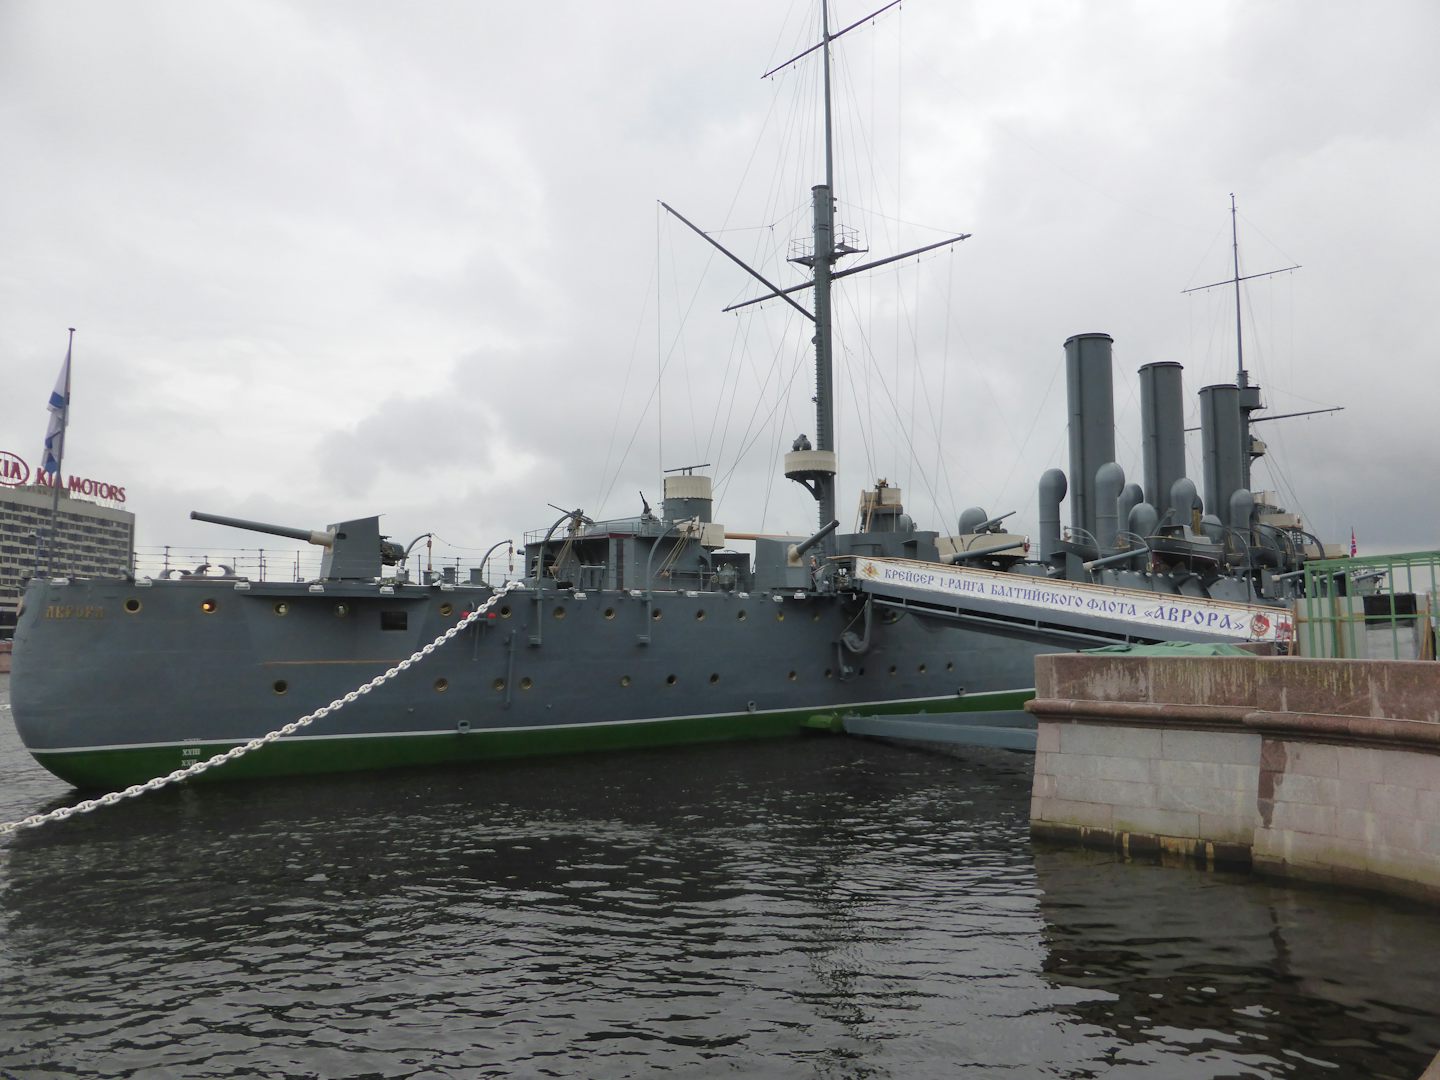 Cruiser Aurora in City of St Petersburg. August 2016.